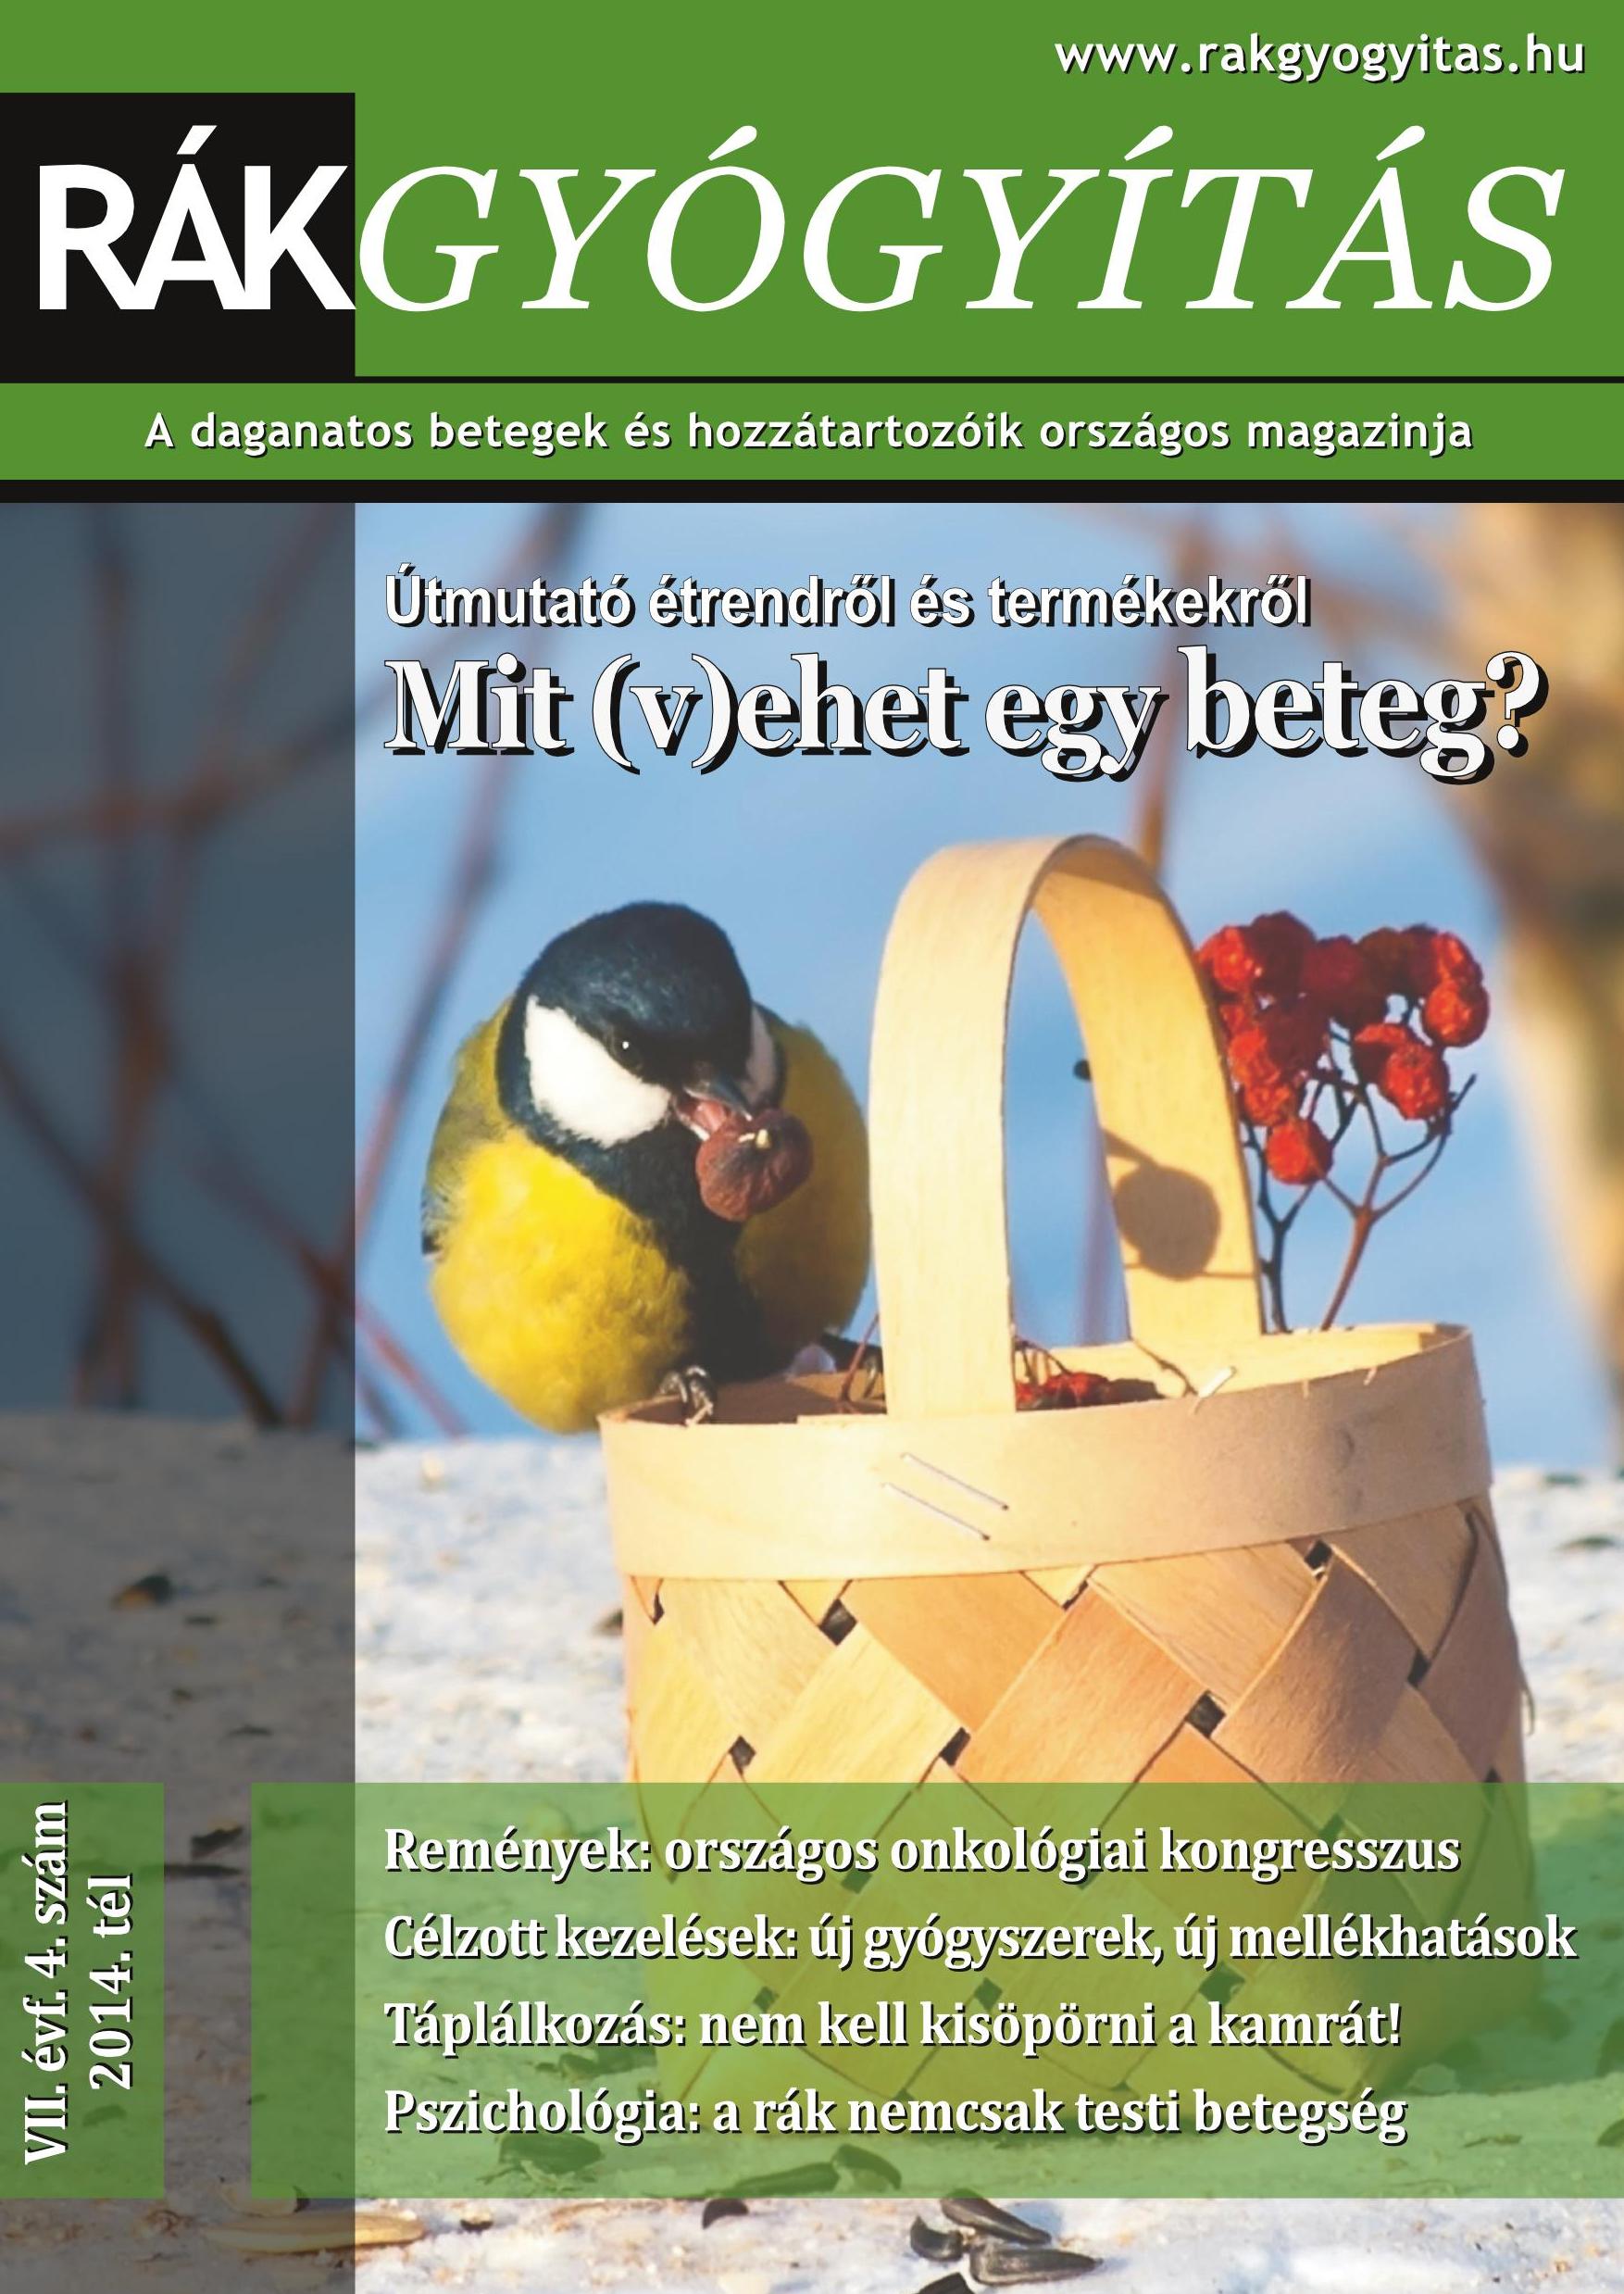 Rákgyógyítás Magazin - 2014. tél